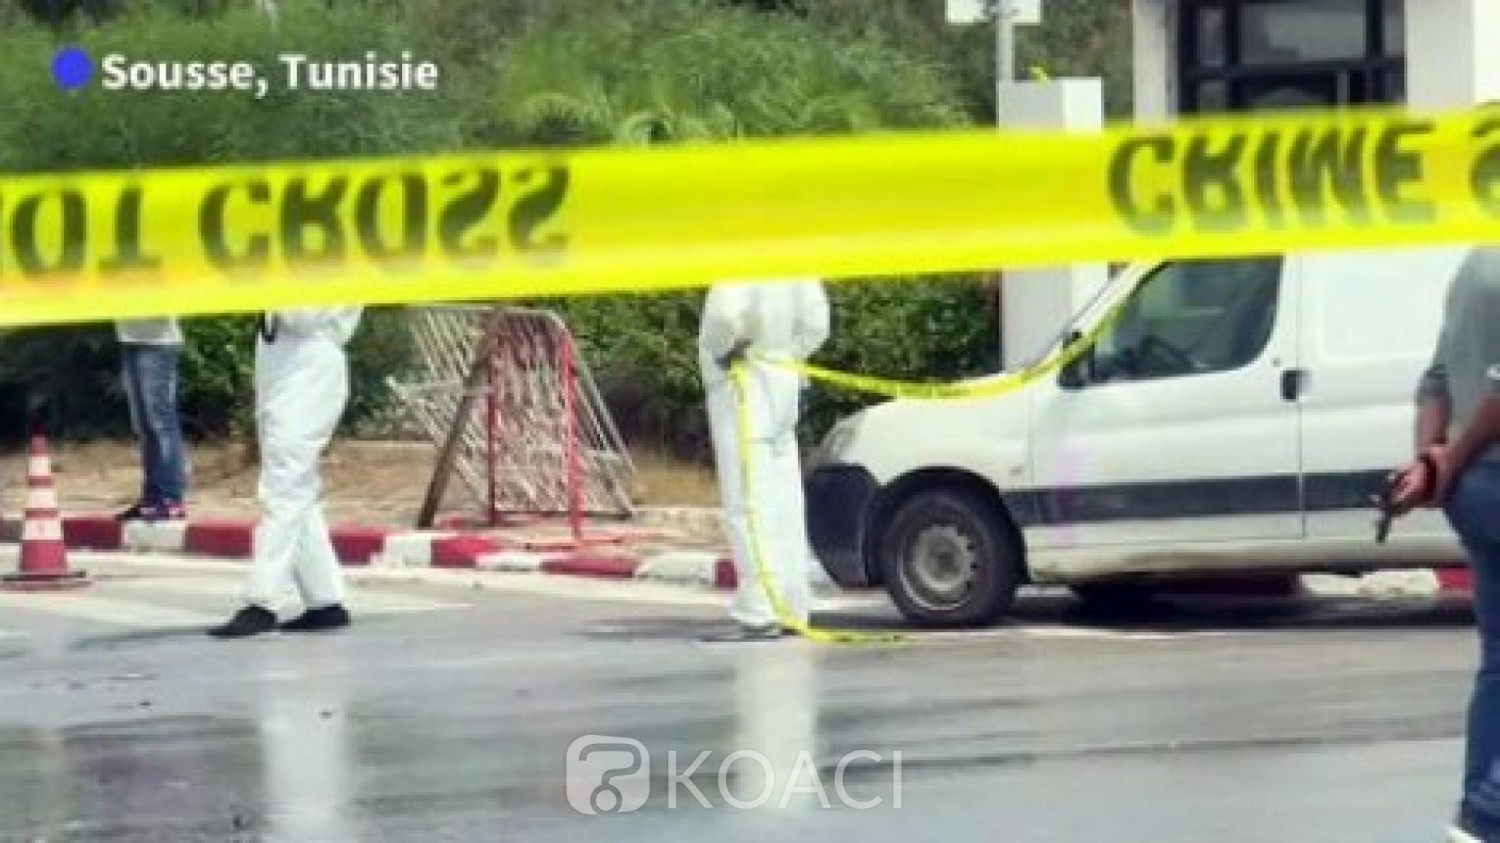 Tunisie : Un gendarme tué dans une attaque terroriste à Sousse, trois assaillants abattus